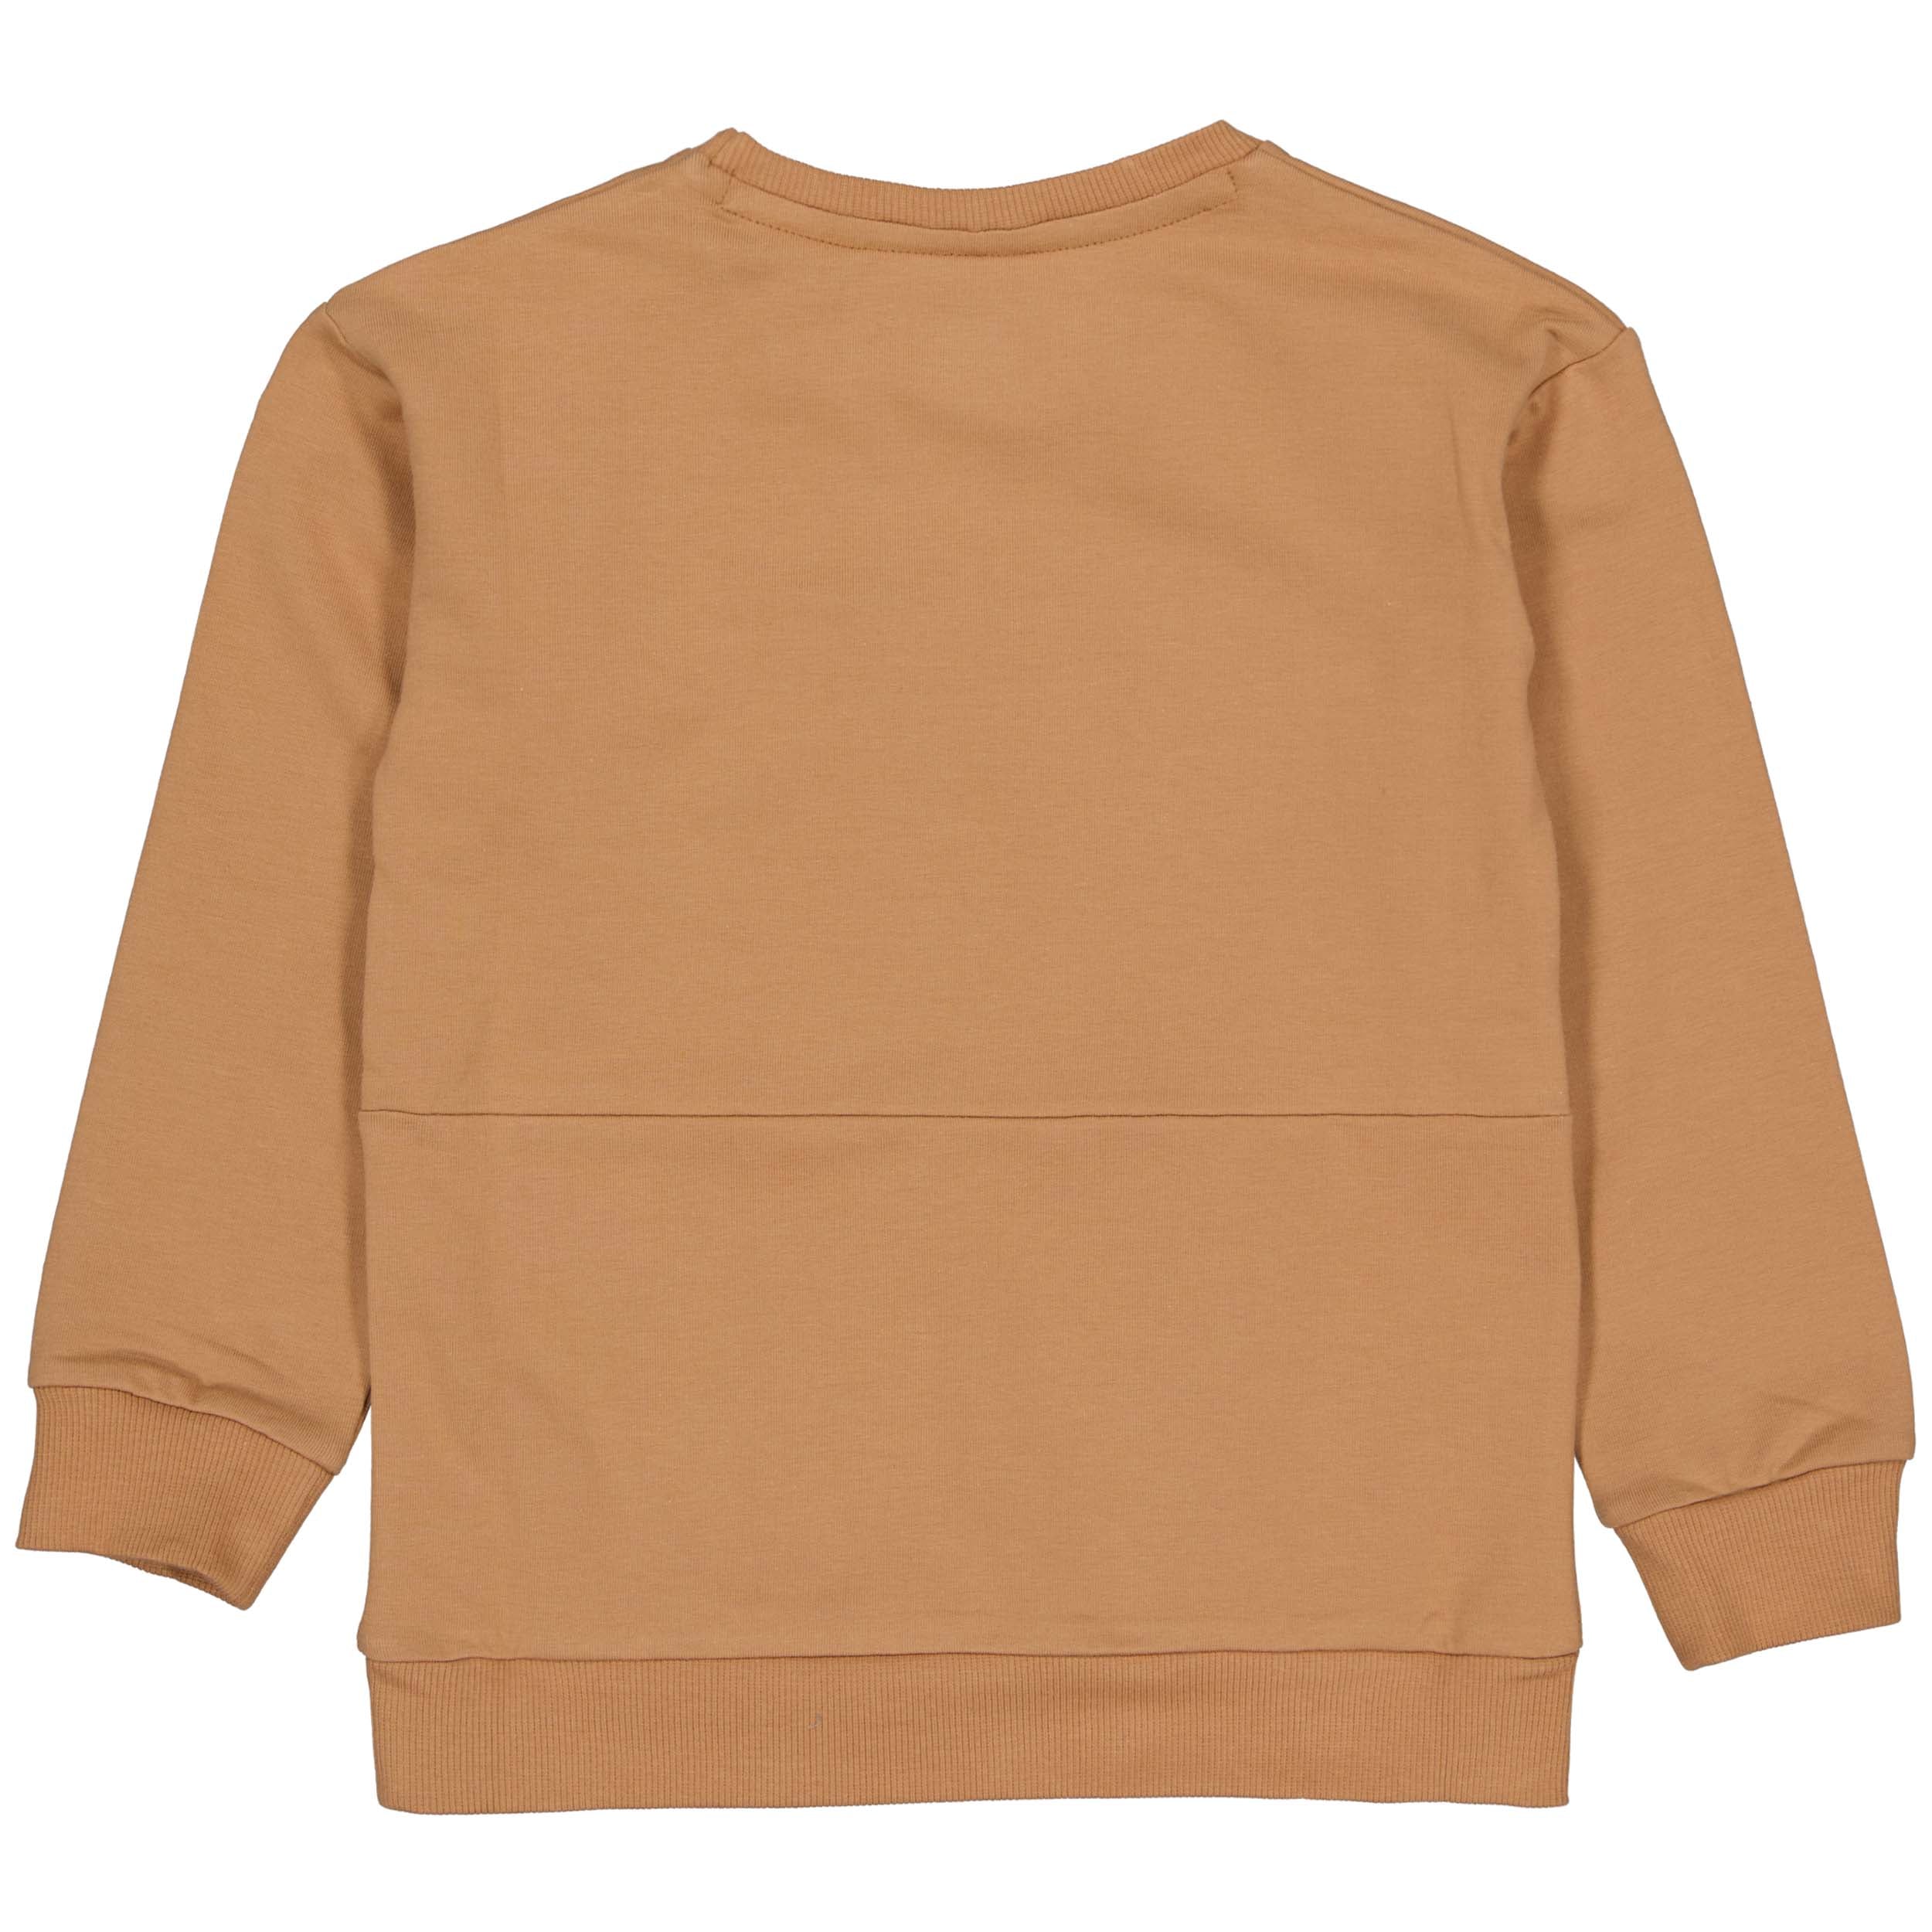 Jongens Sweater BEERW221 van Little Levv in de kleur Camel in maat 128.